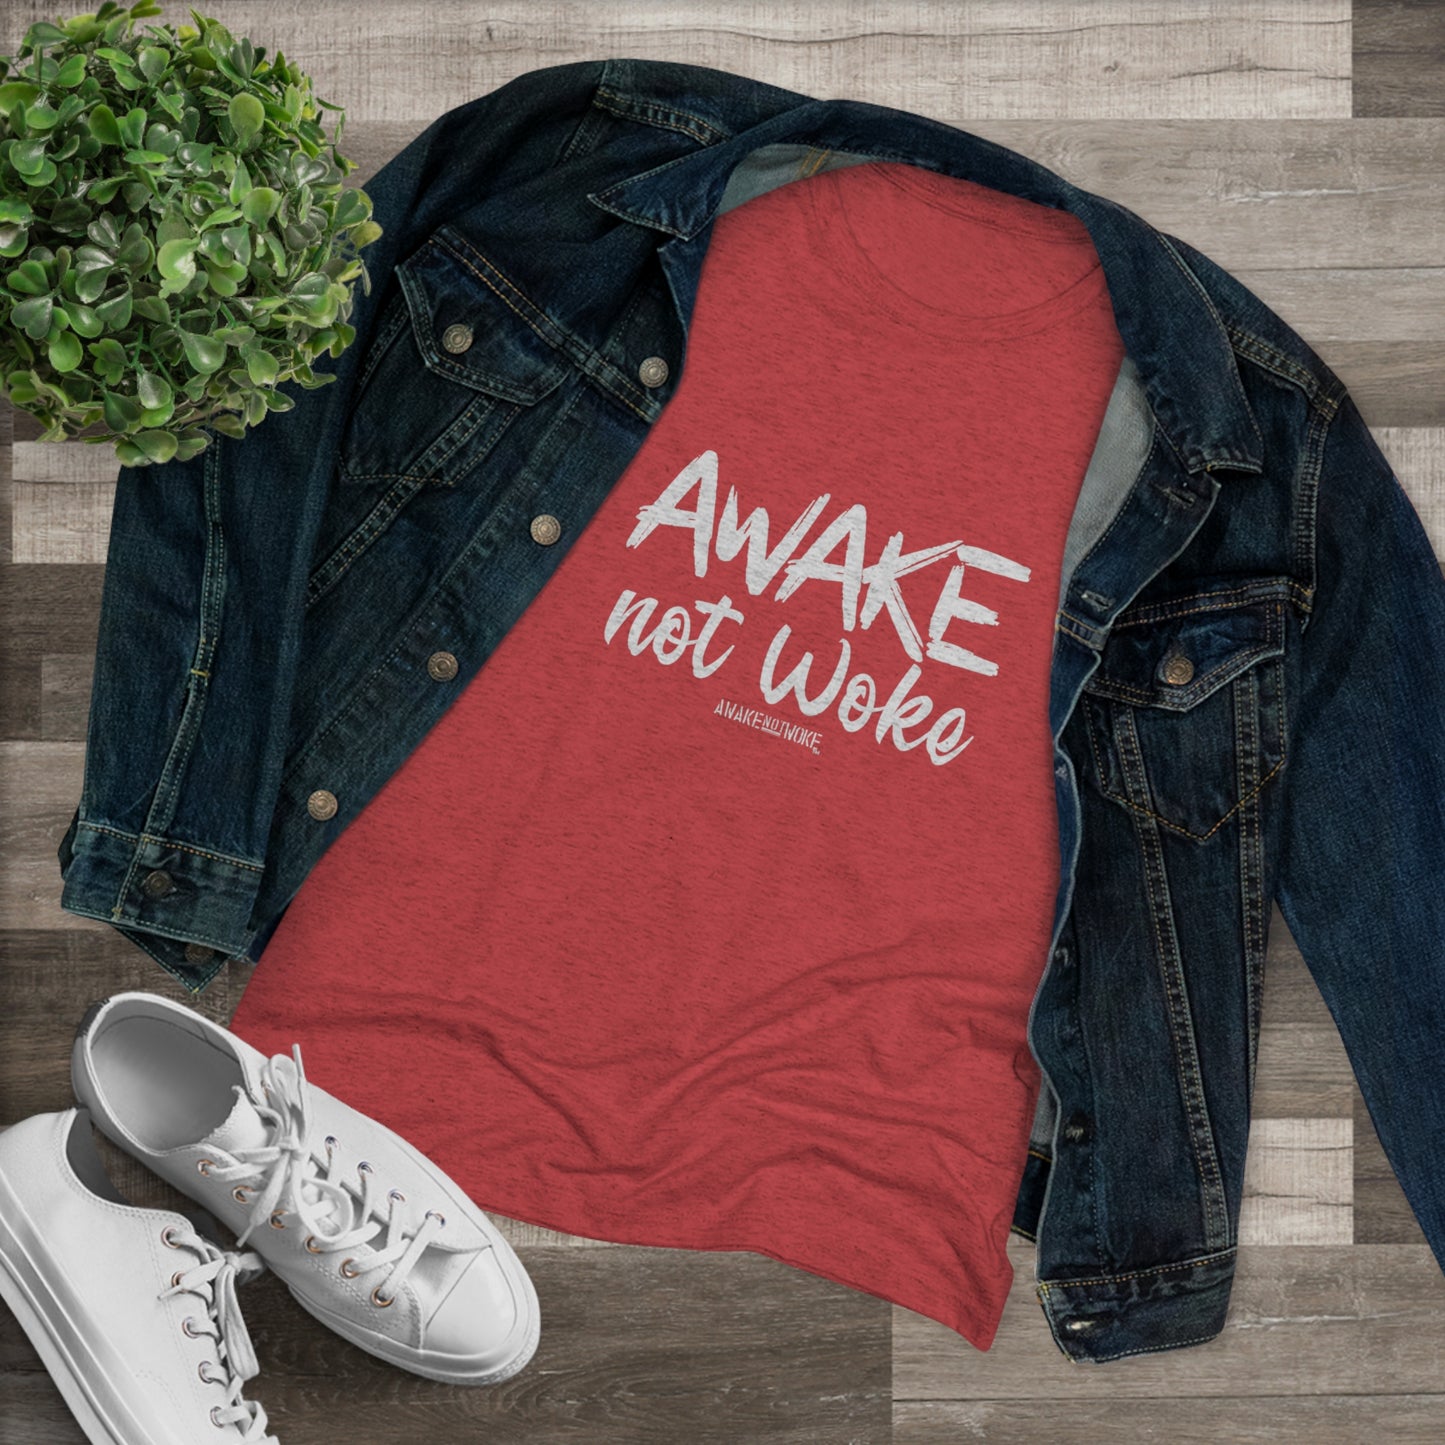 Women's Awake Not Woke Tee